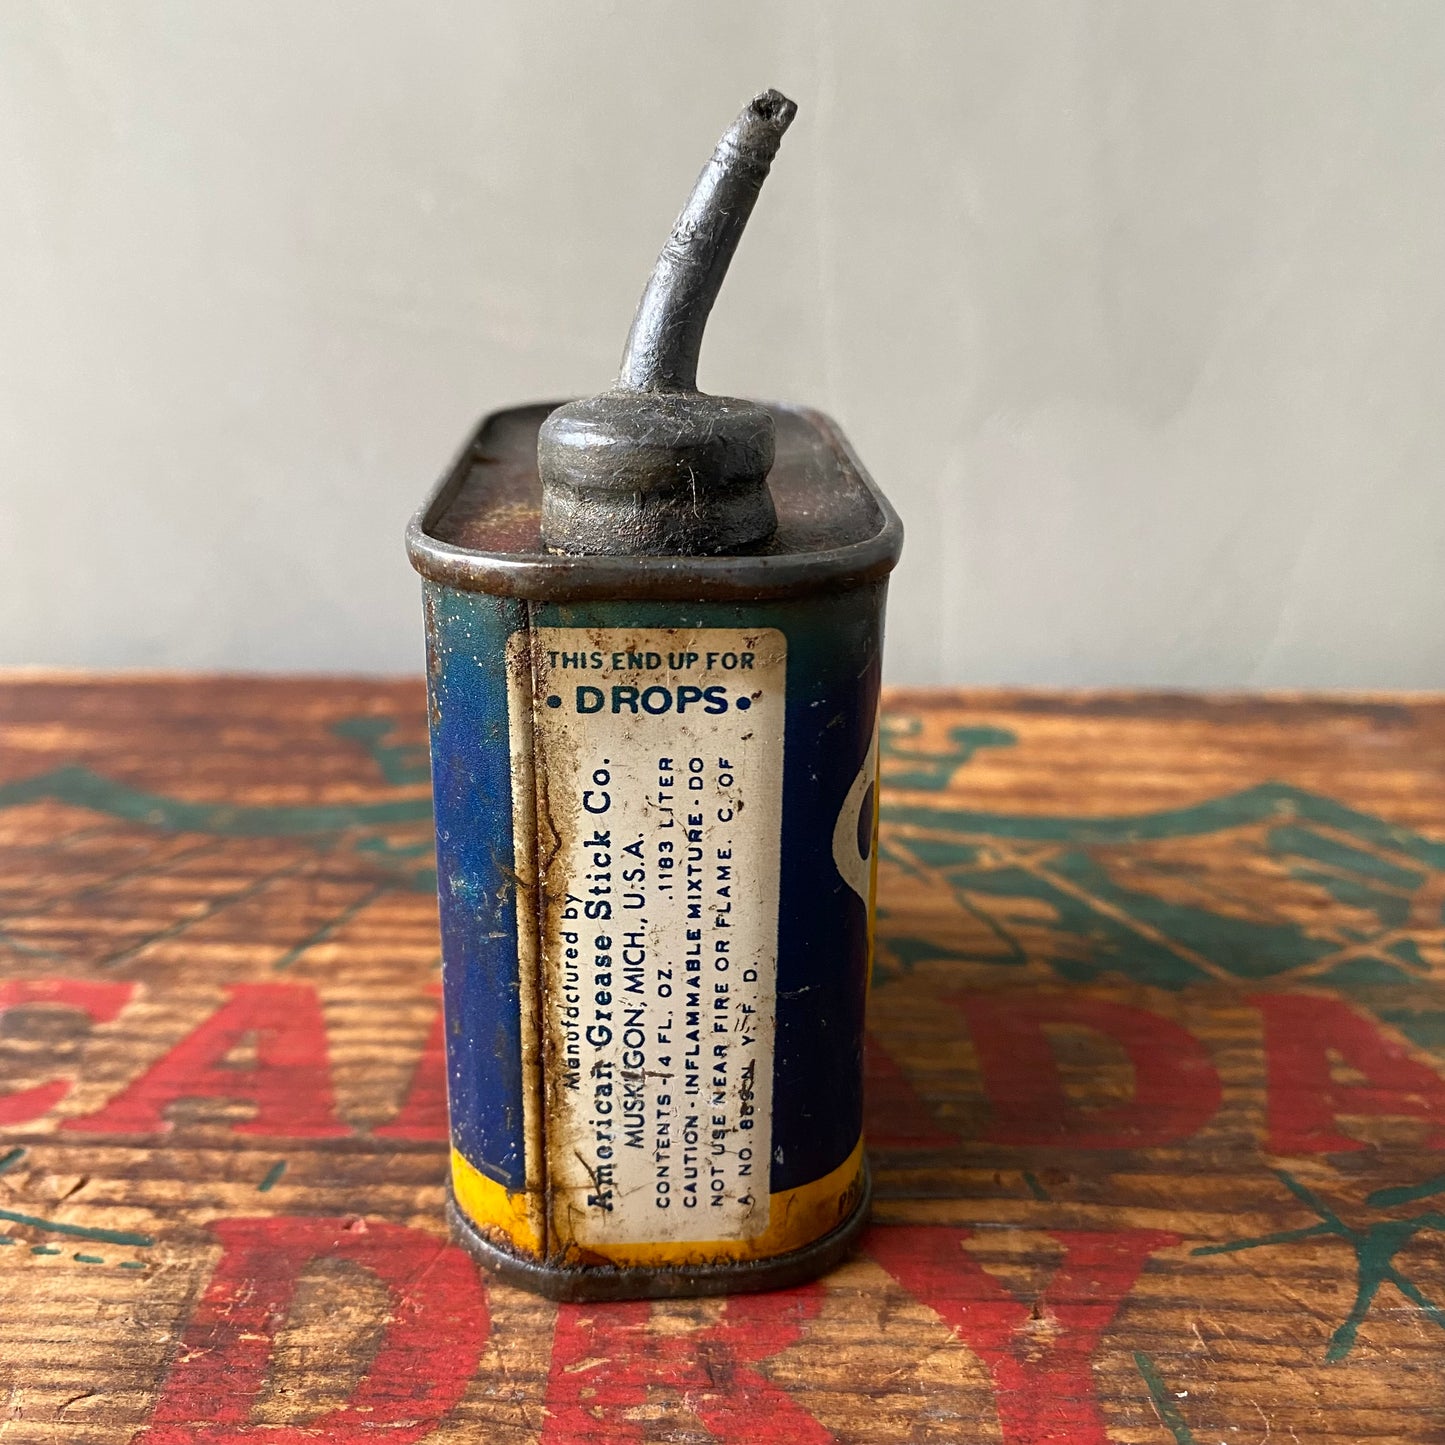 【1948 USA vintage】tin can key oil